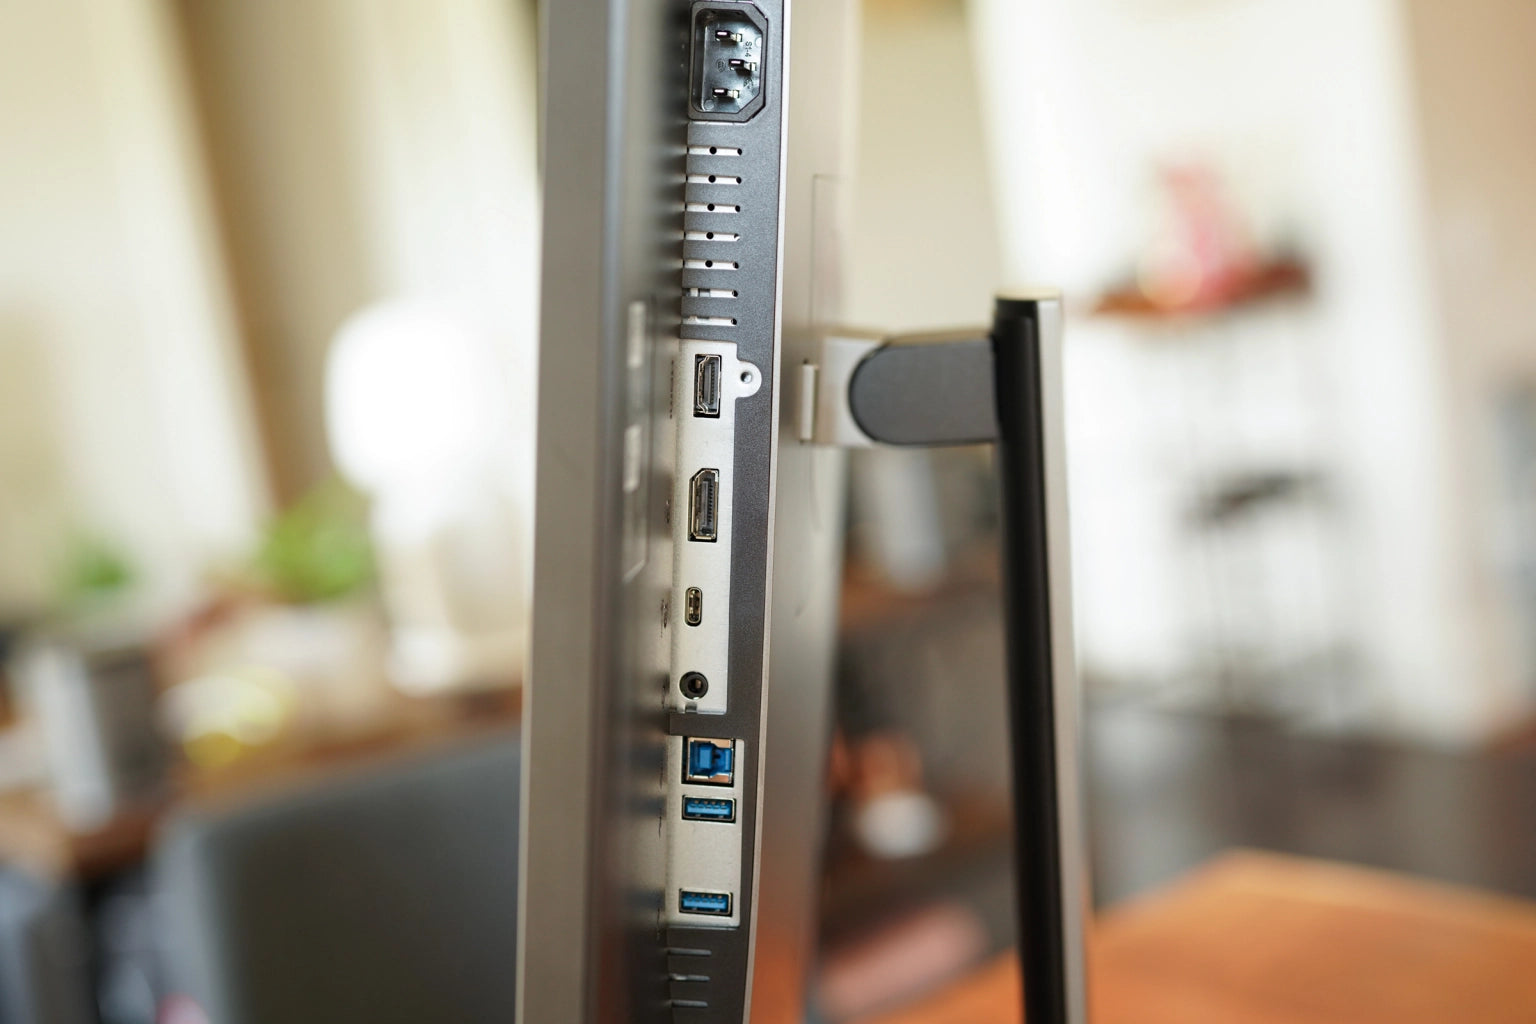 Dell 32" UltraSharp 4K USB-C Monitor